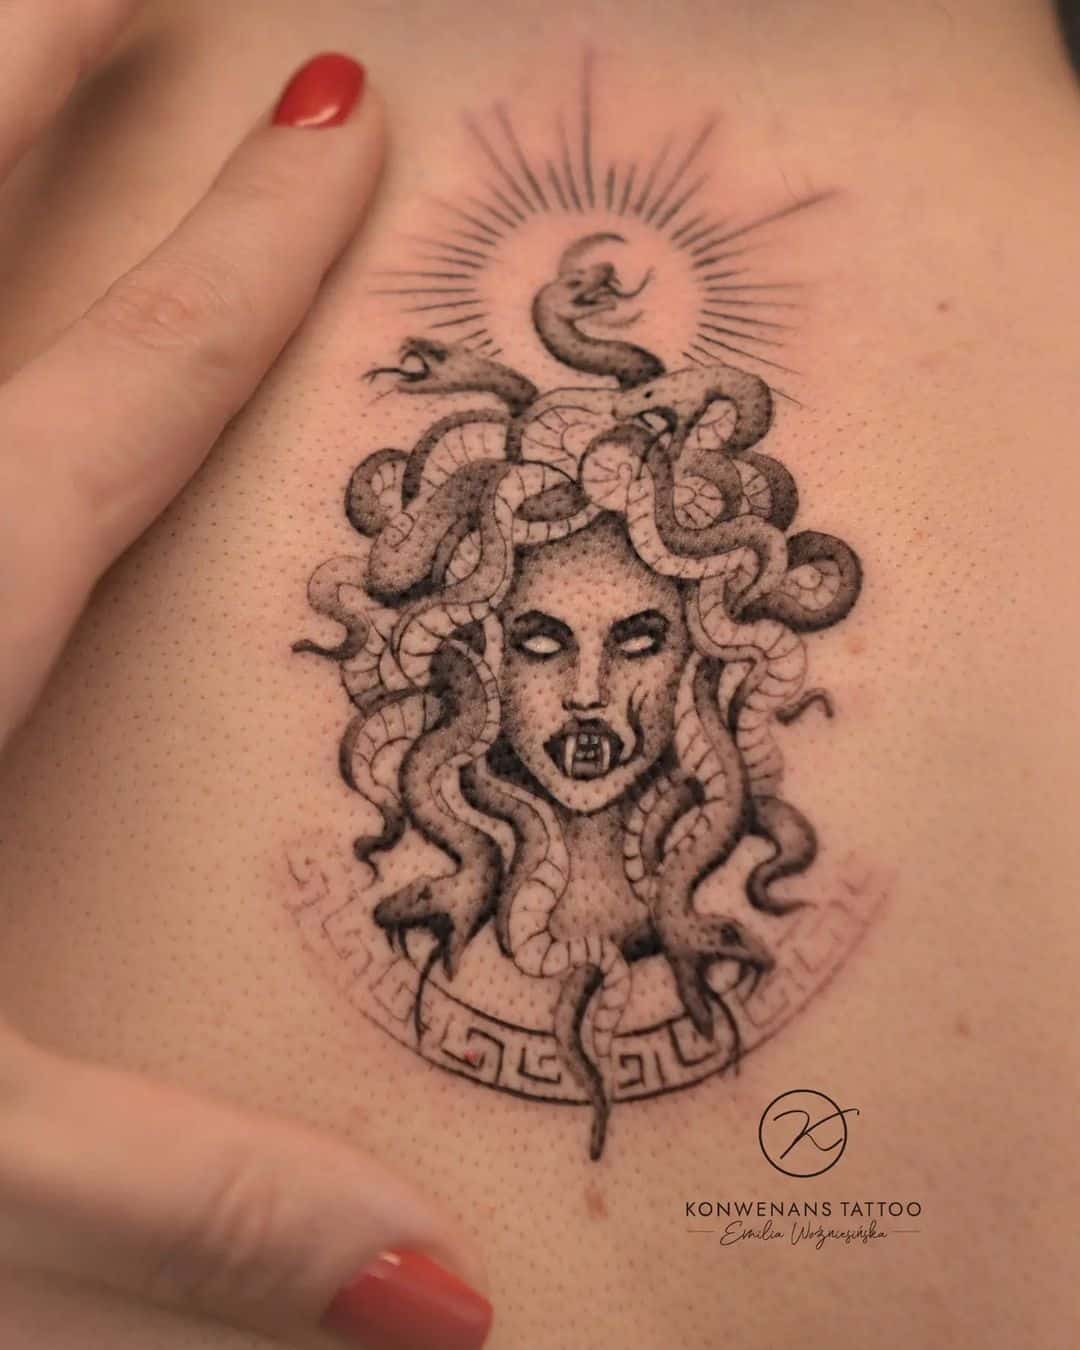 Minimalistic medusa tattoo by konwenans.tattoo